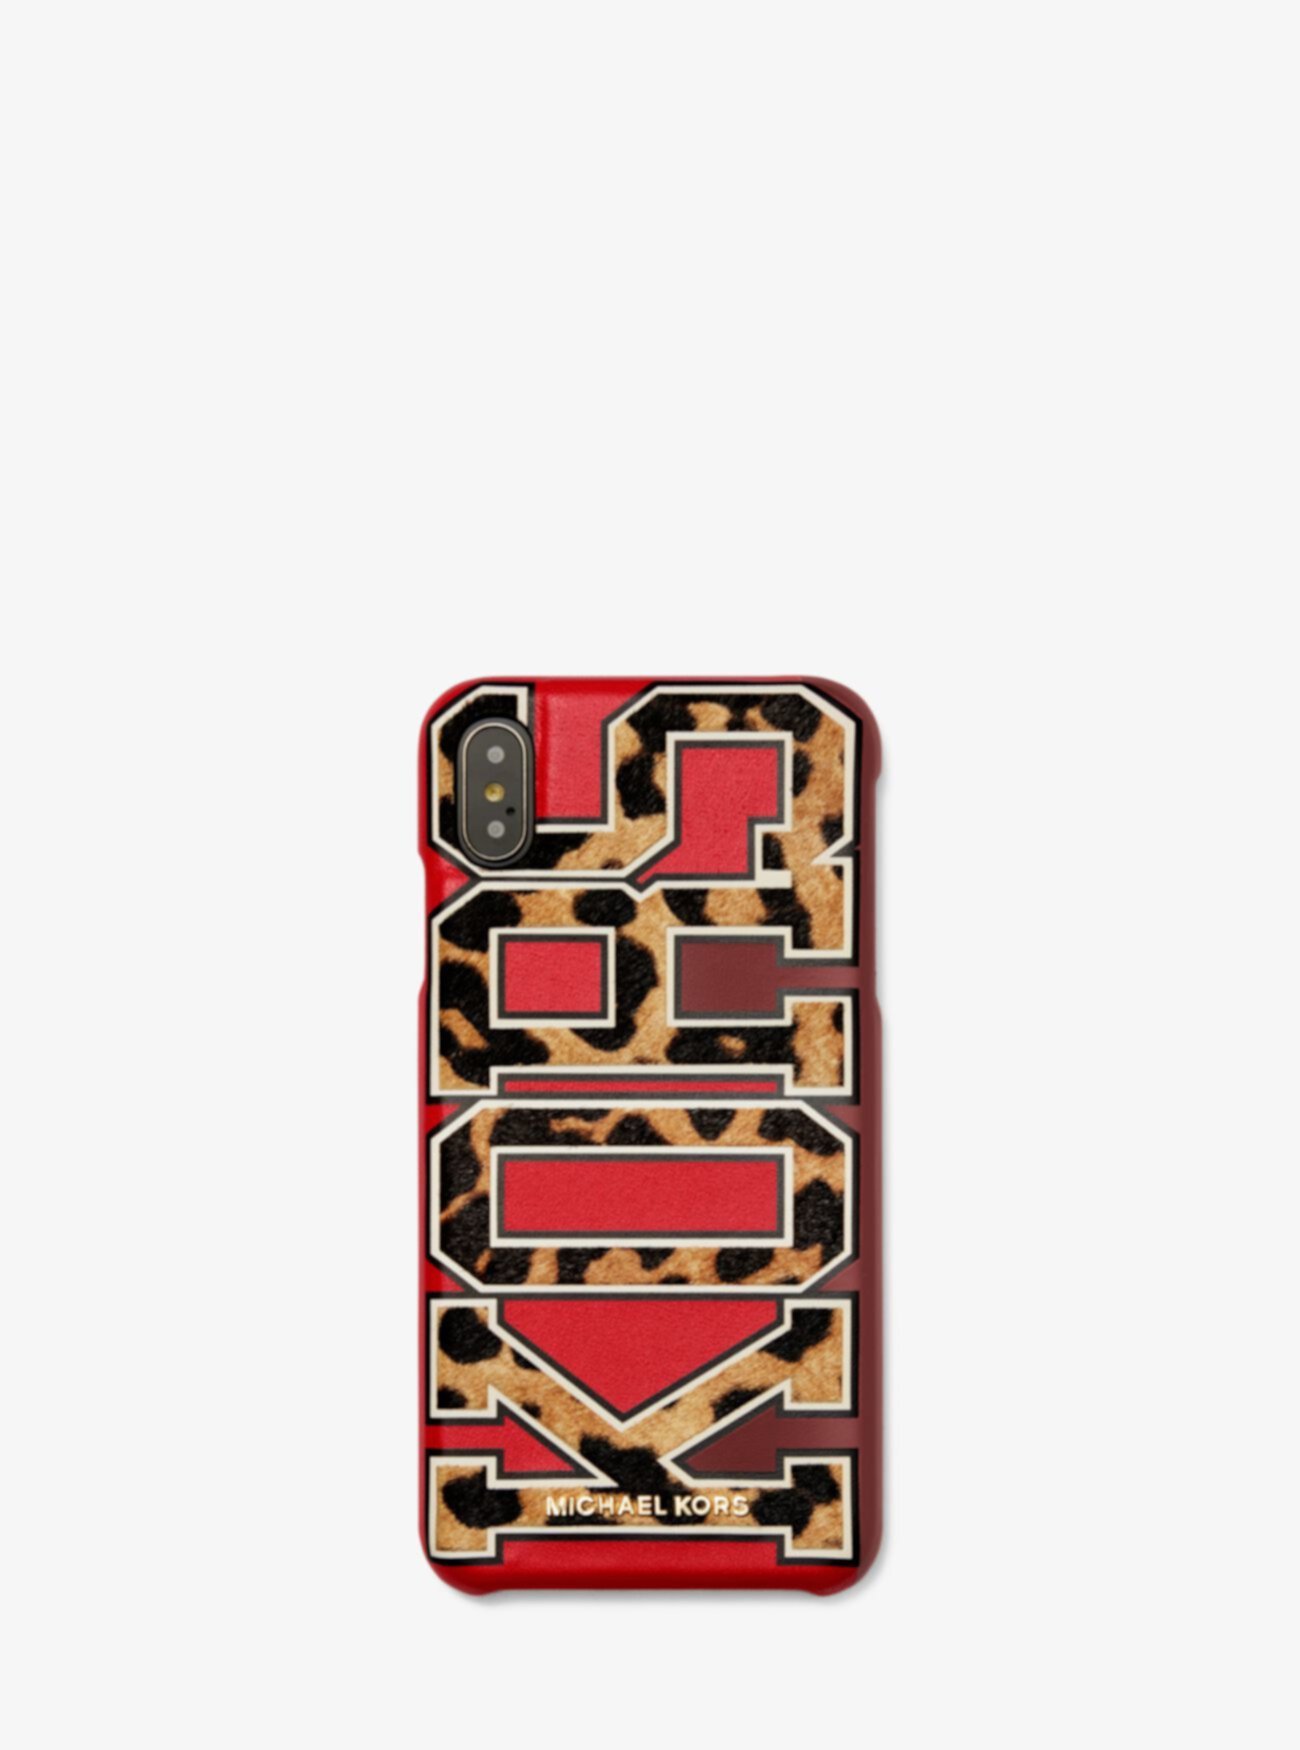 Кожаный чехол для телефона с логотипом Leopard для iPhone XS Max Michael Kors